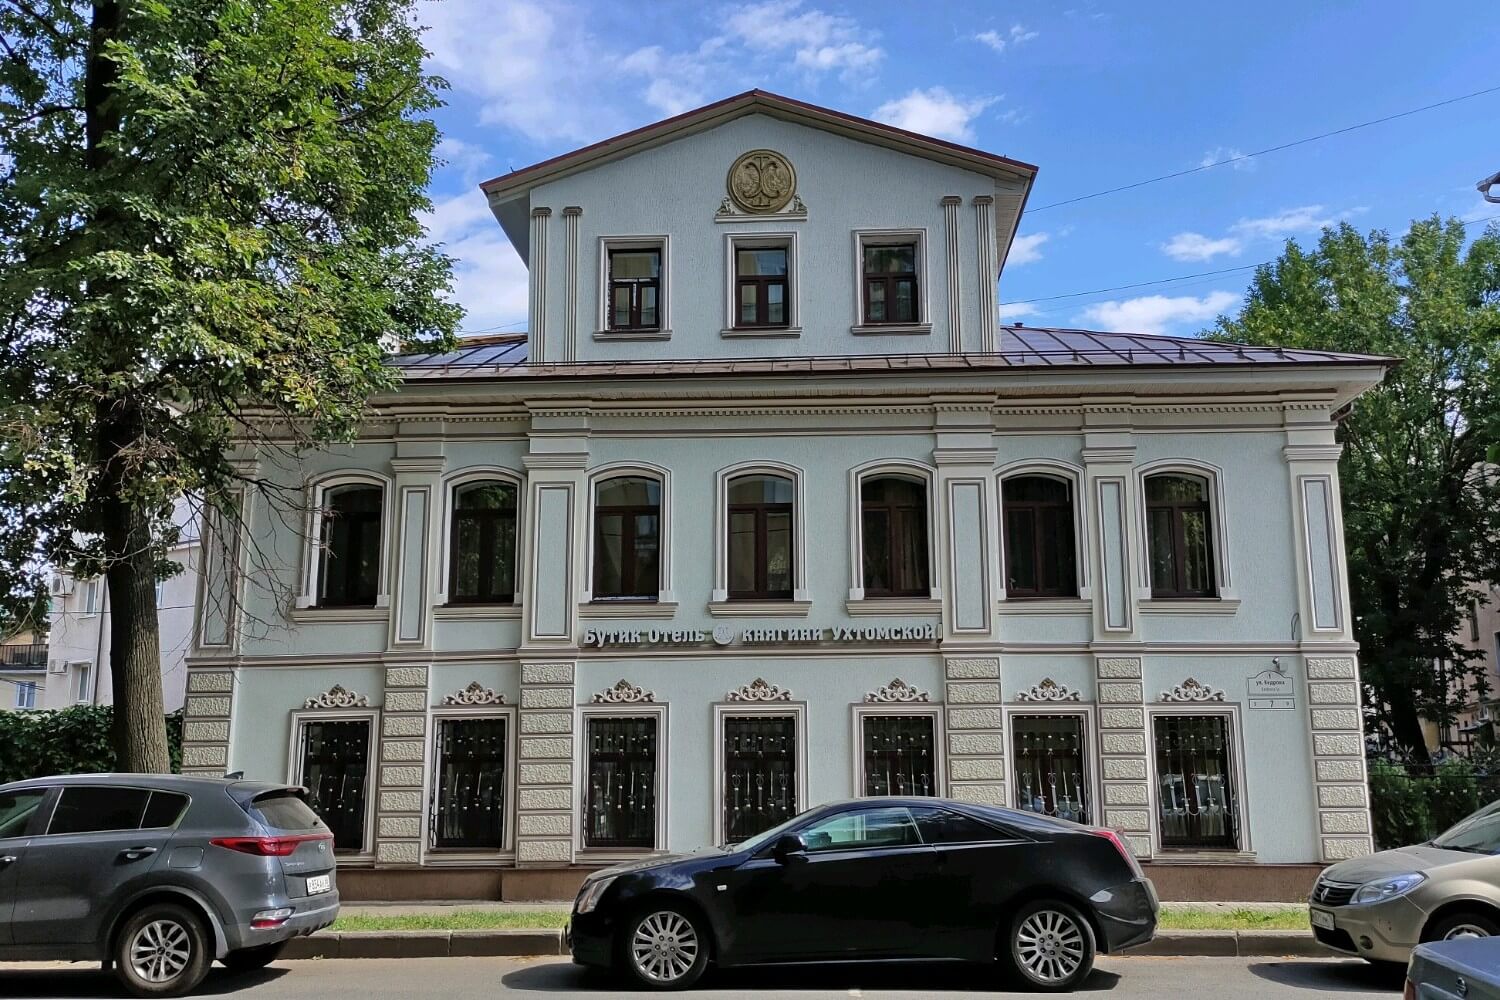 Бутик-отель Княгини Ухтомской